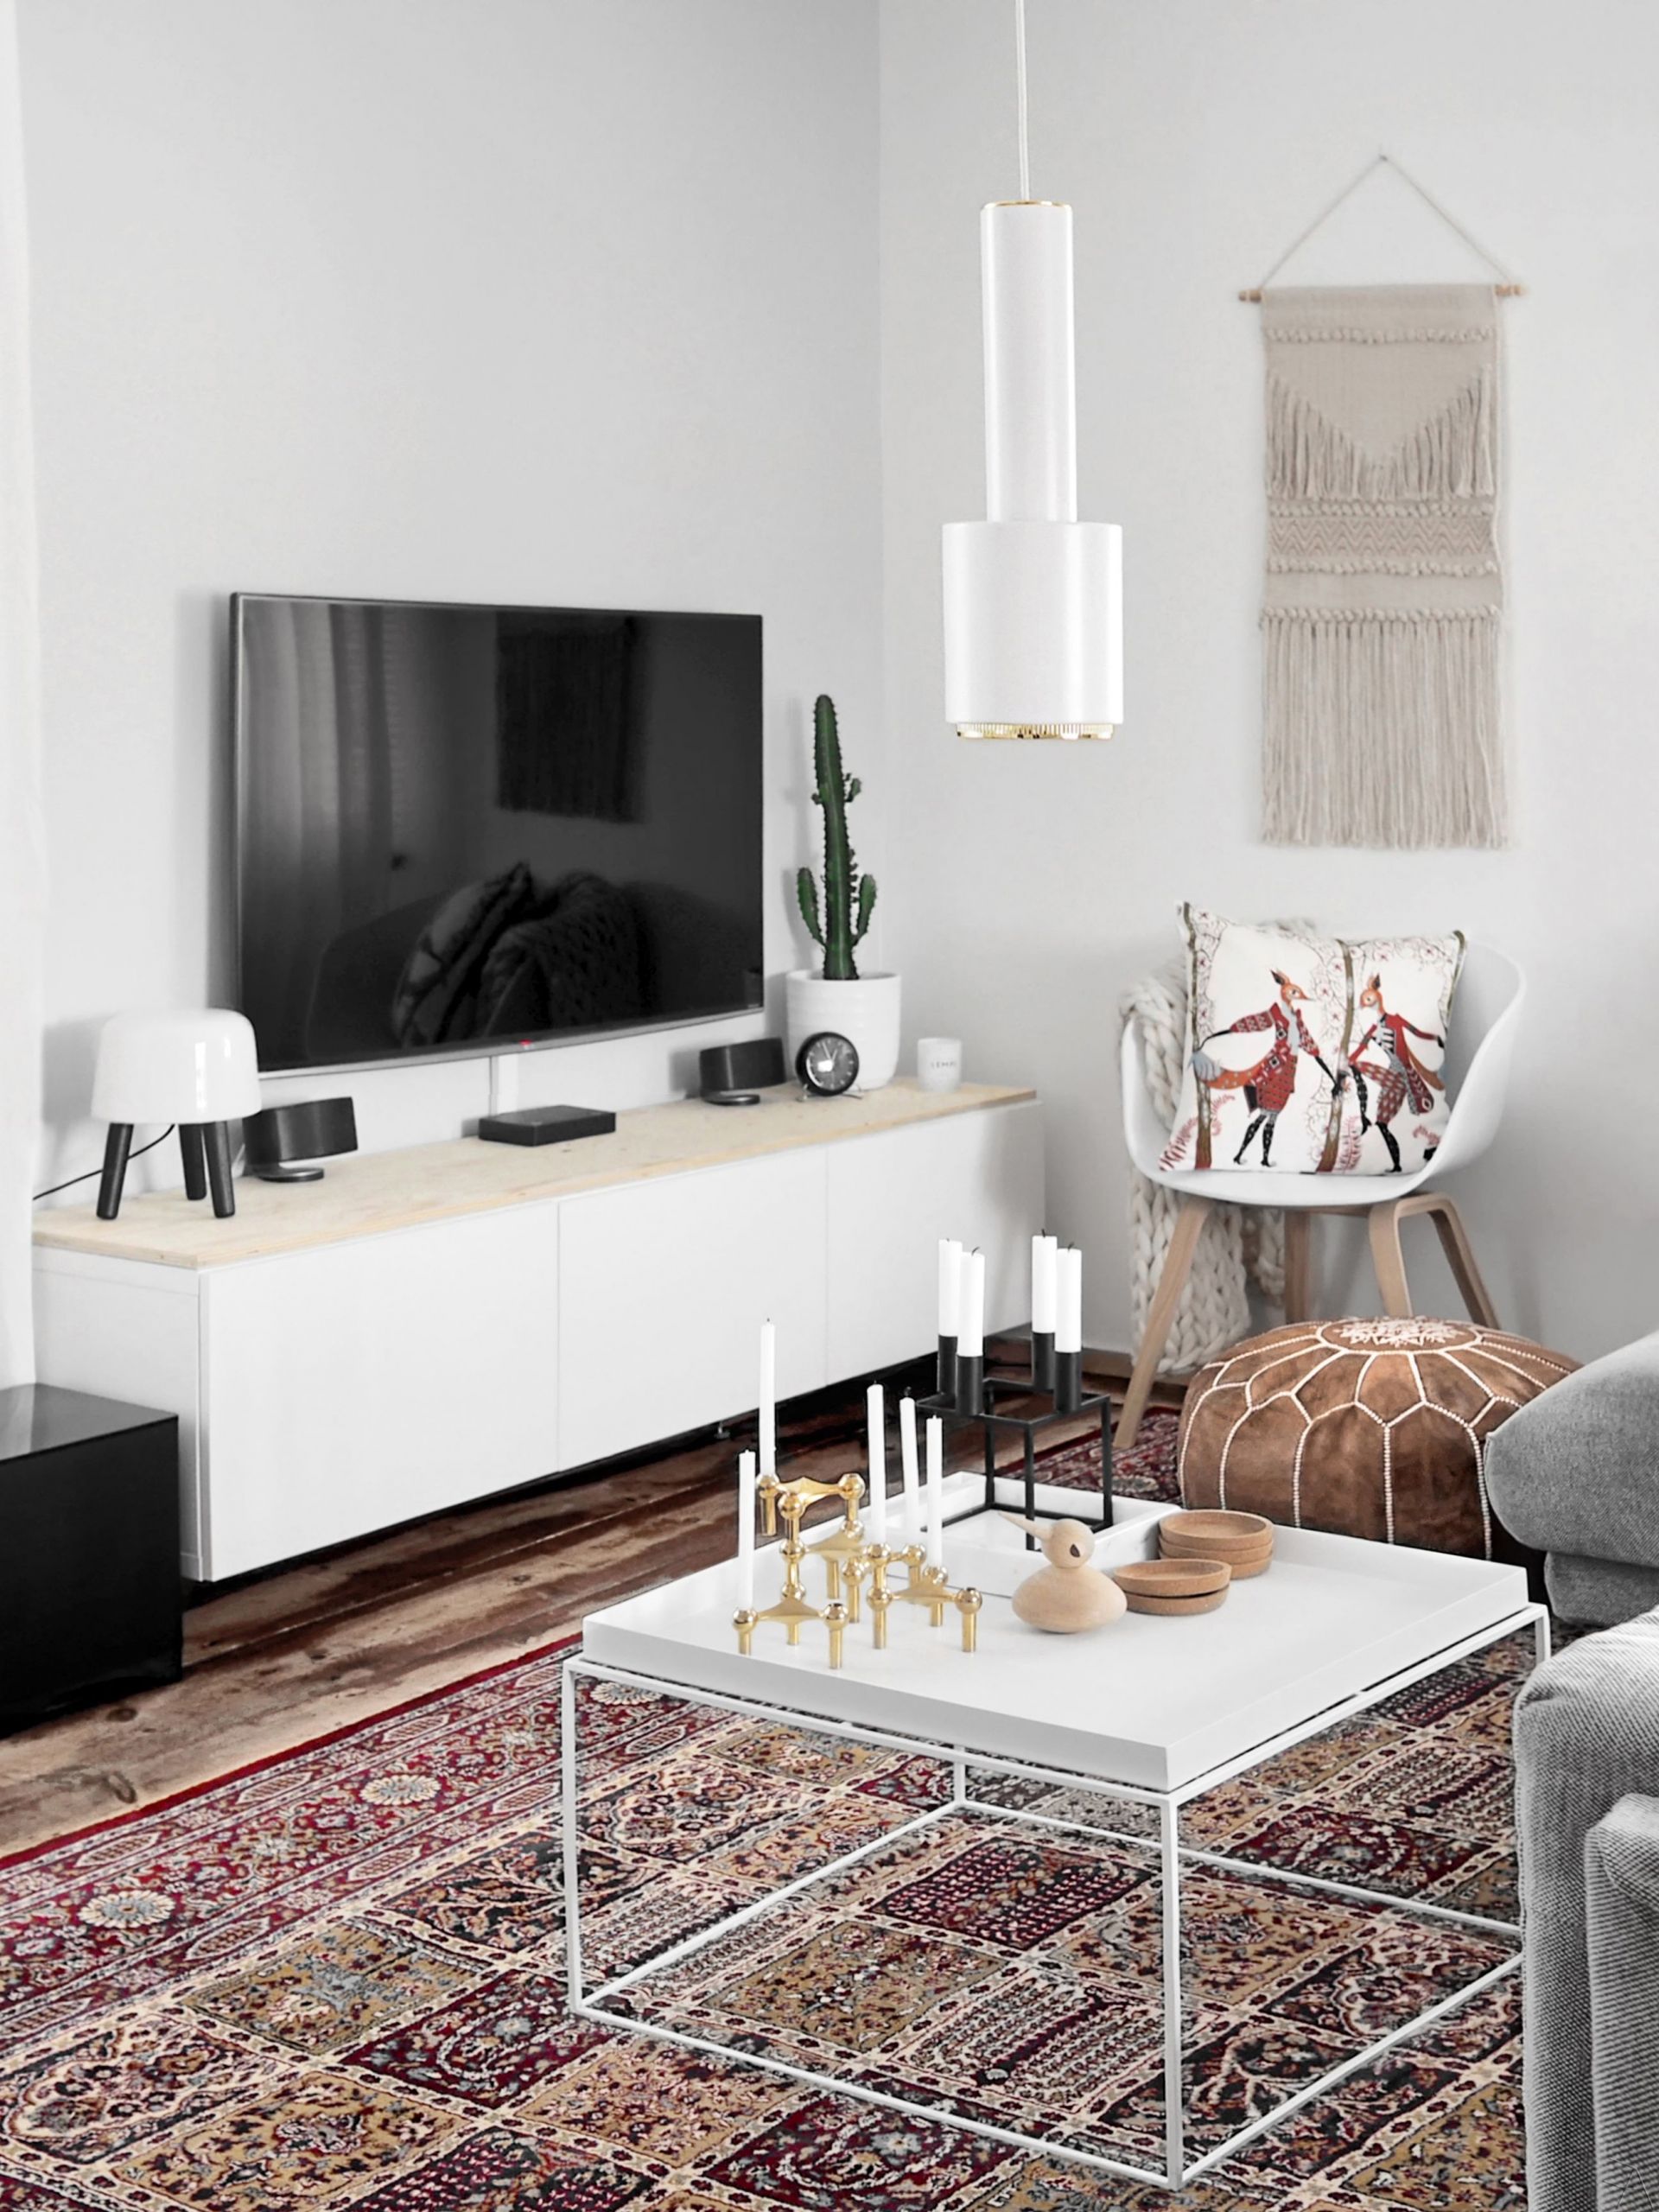 Ikea Living Room Rugs
 Our livingroom ️ IkeaRugs